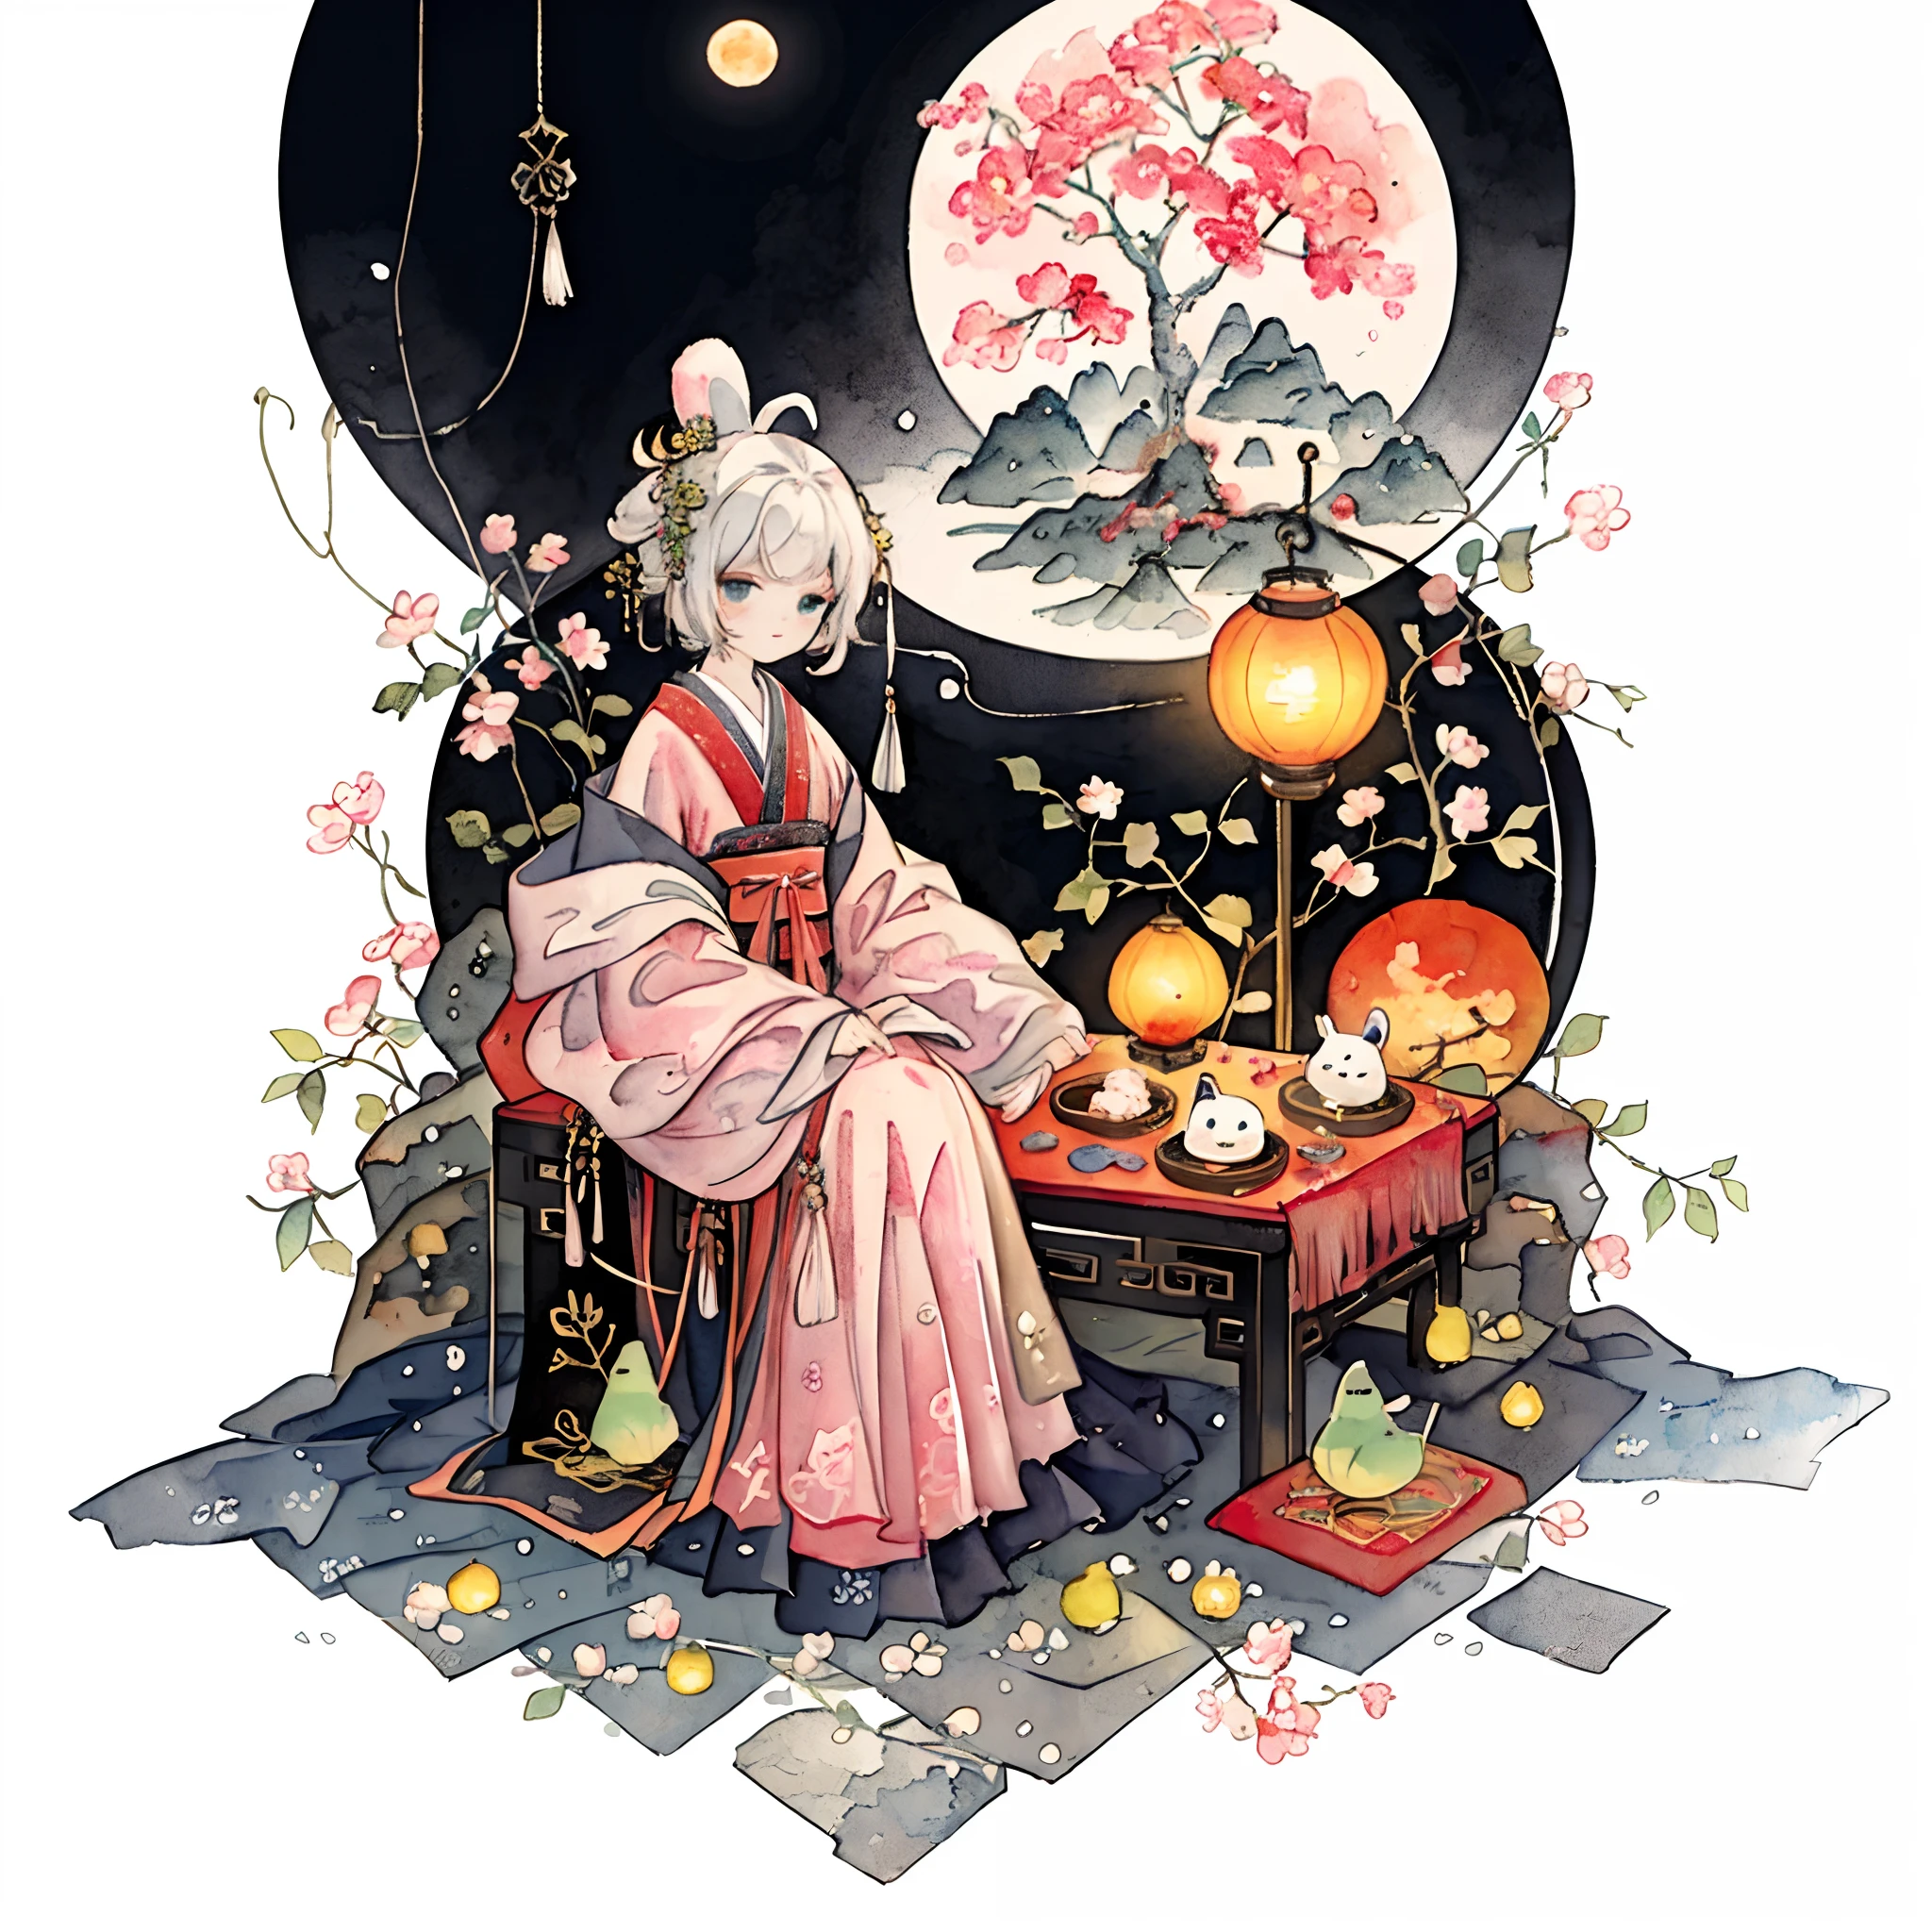 (pastelcolor:1.3)、(linda ilustración:1.3)、(pintura de acuarela:1.1),（Un conejo：1.4）, exteriors，Apoyado en el borde del árbol, mirar hacia la luna, la luna；1.2，（（osmanto dulce，Linterna Kongming，pastel de menisco：1.3）），Ambiente del Festival del Medio Otoño：1.3，（kanji chino：1.3），Estilo de ilustración tradicional china, arte digital, fondo sencillo, Obra maestra sobre fondo blanco., mejor calidad, ultra detallado, alta calidad, 4k